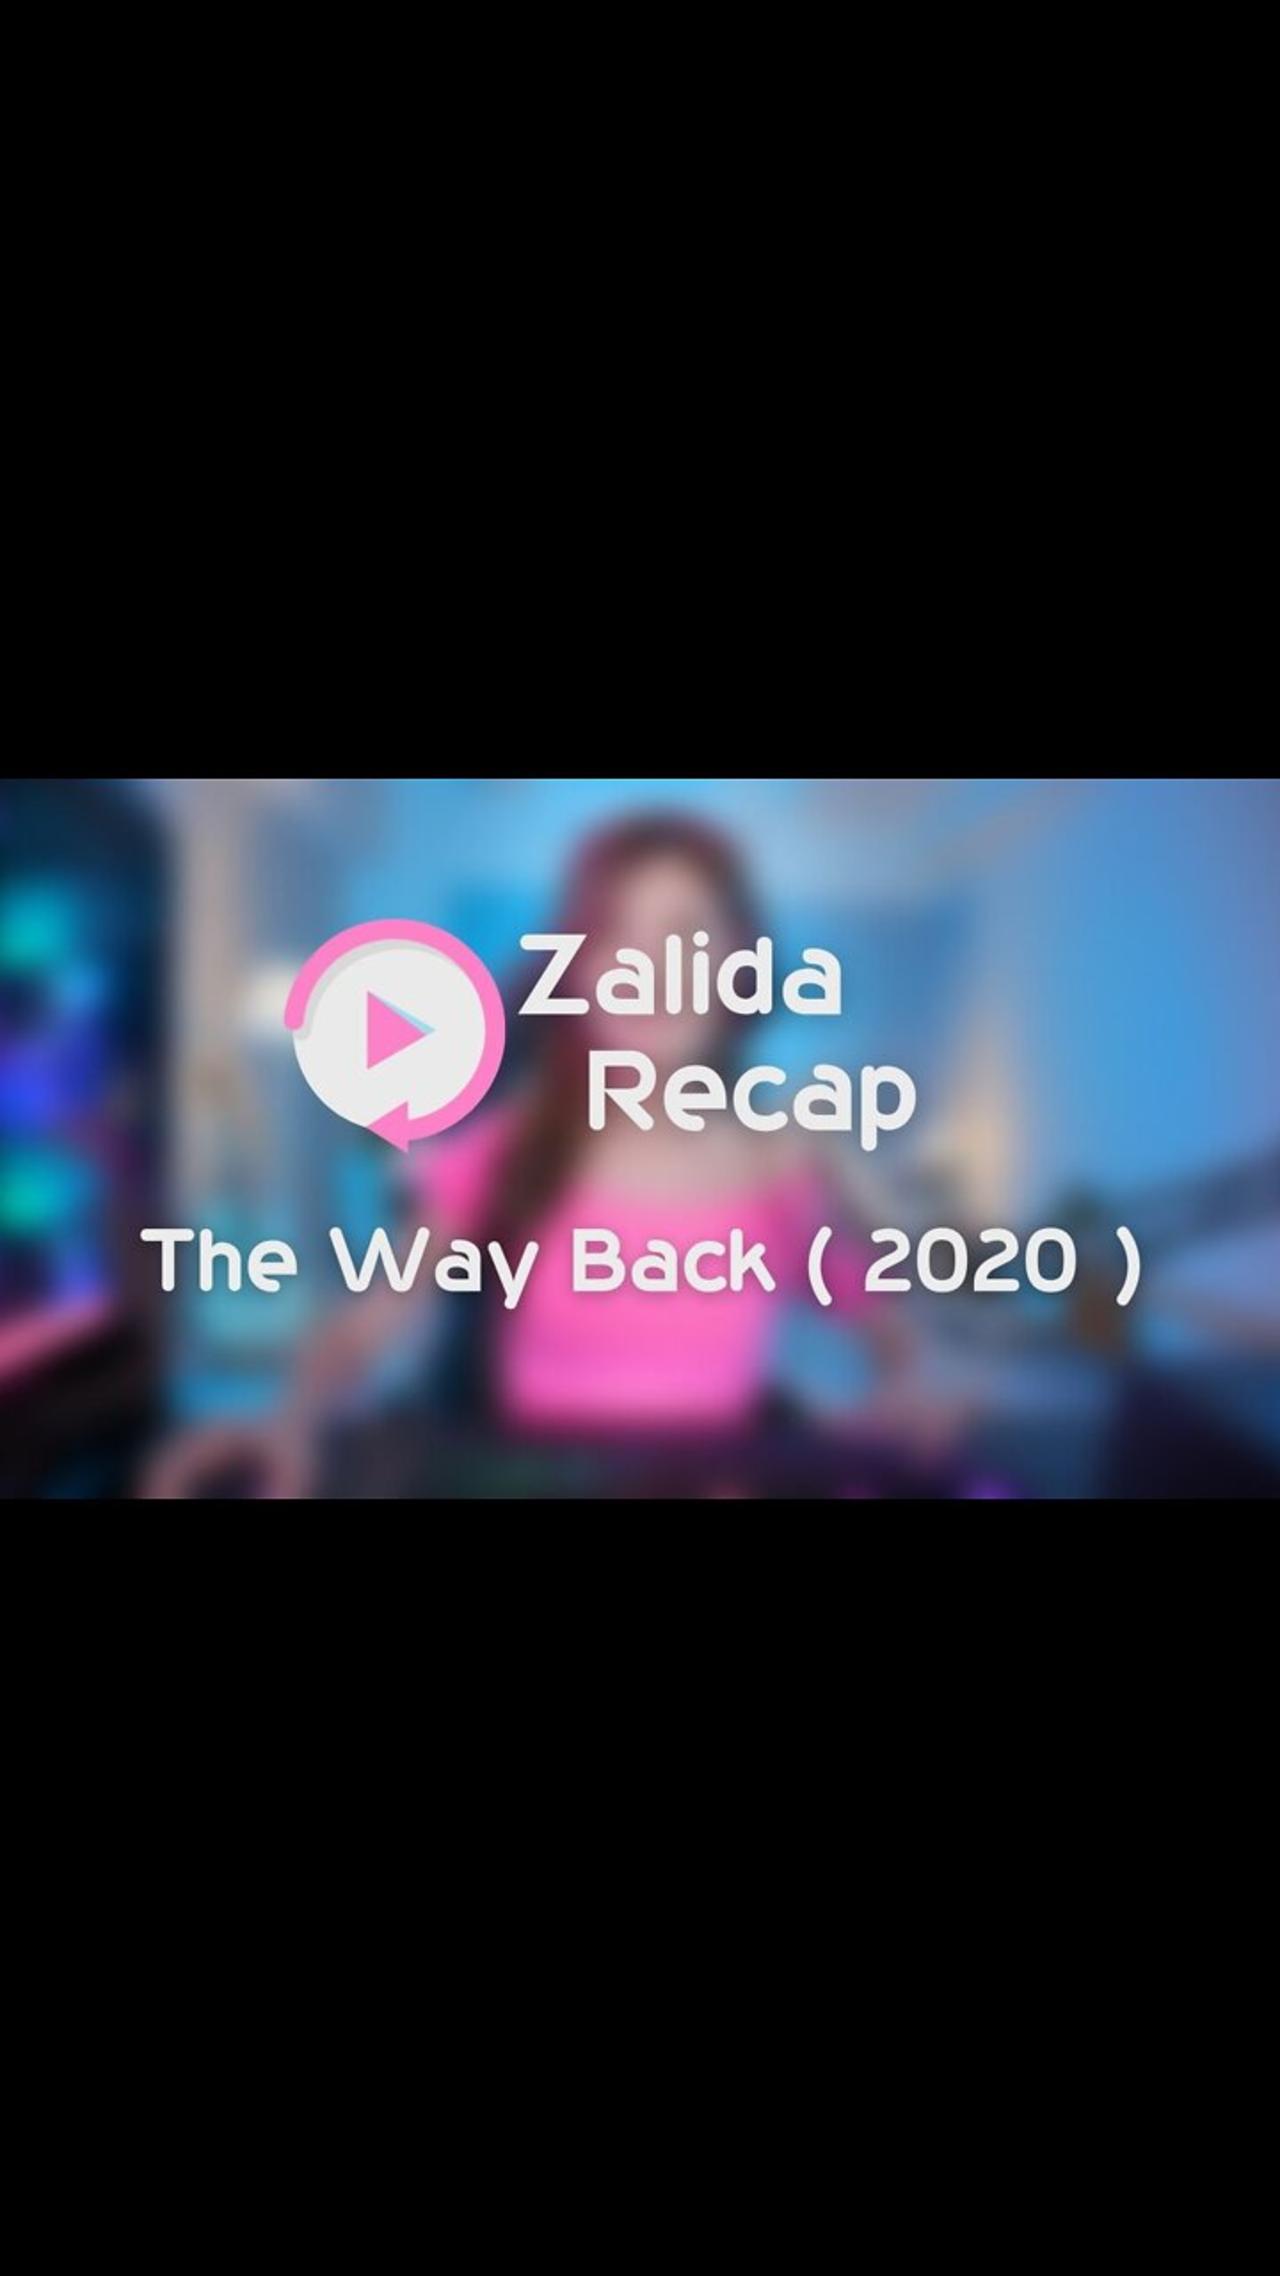 The Way Back ( 2020 ) - Movie Recap Summary